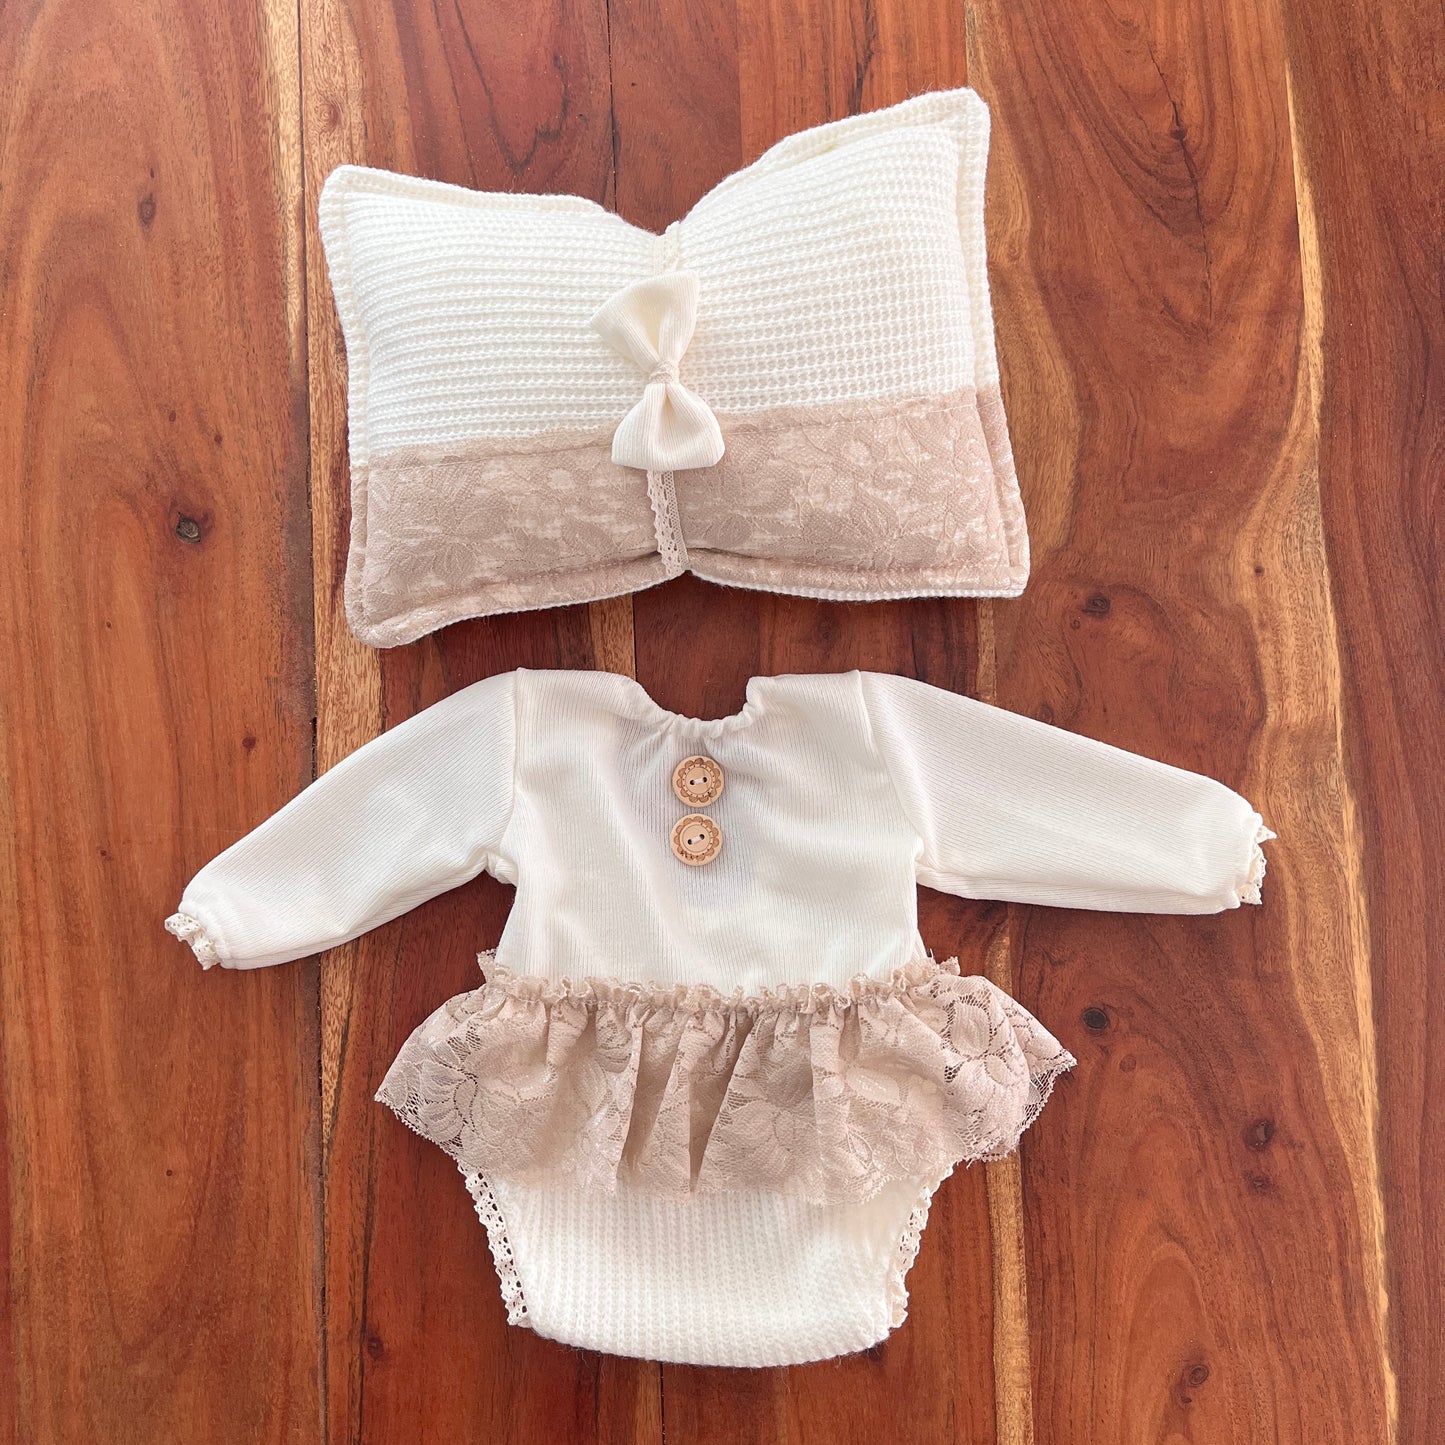 Amey Cream1 Neugeborenen-Fotografie-Requisiten-Outfit für Mädchen